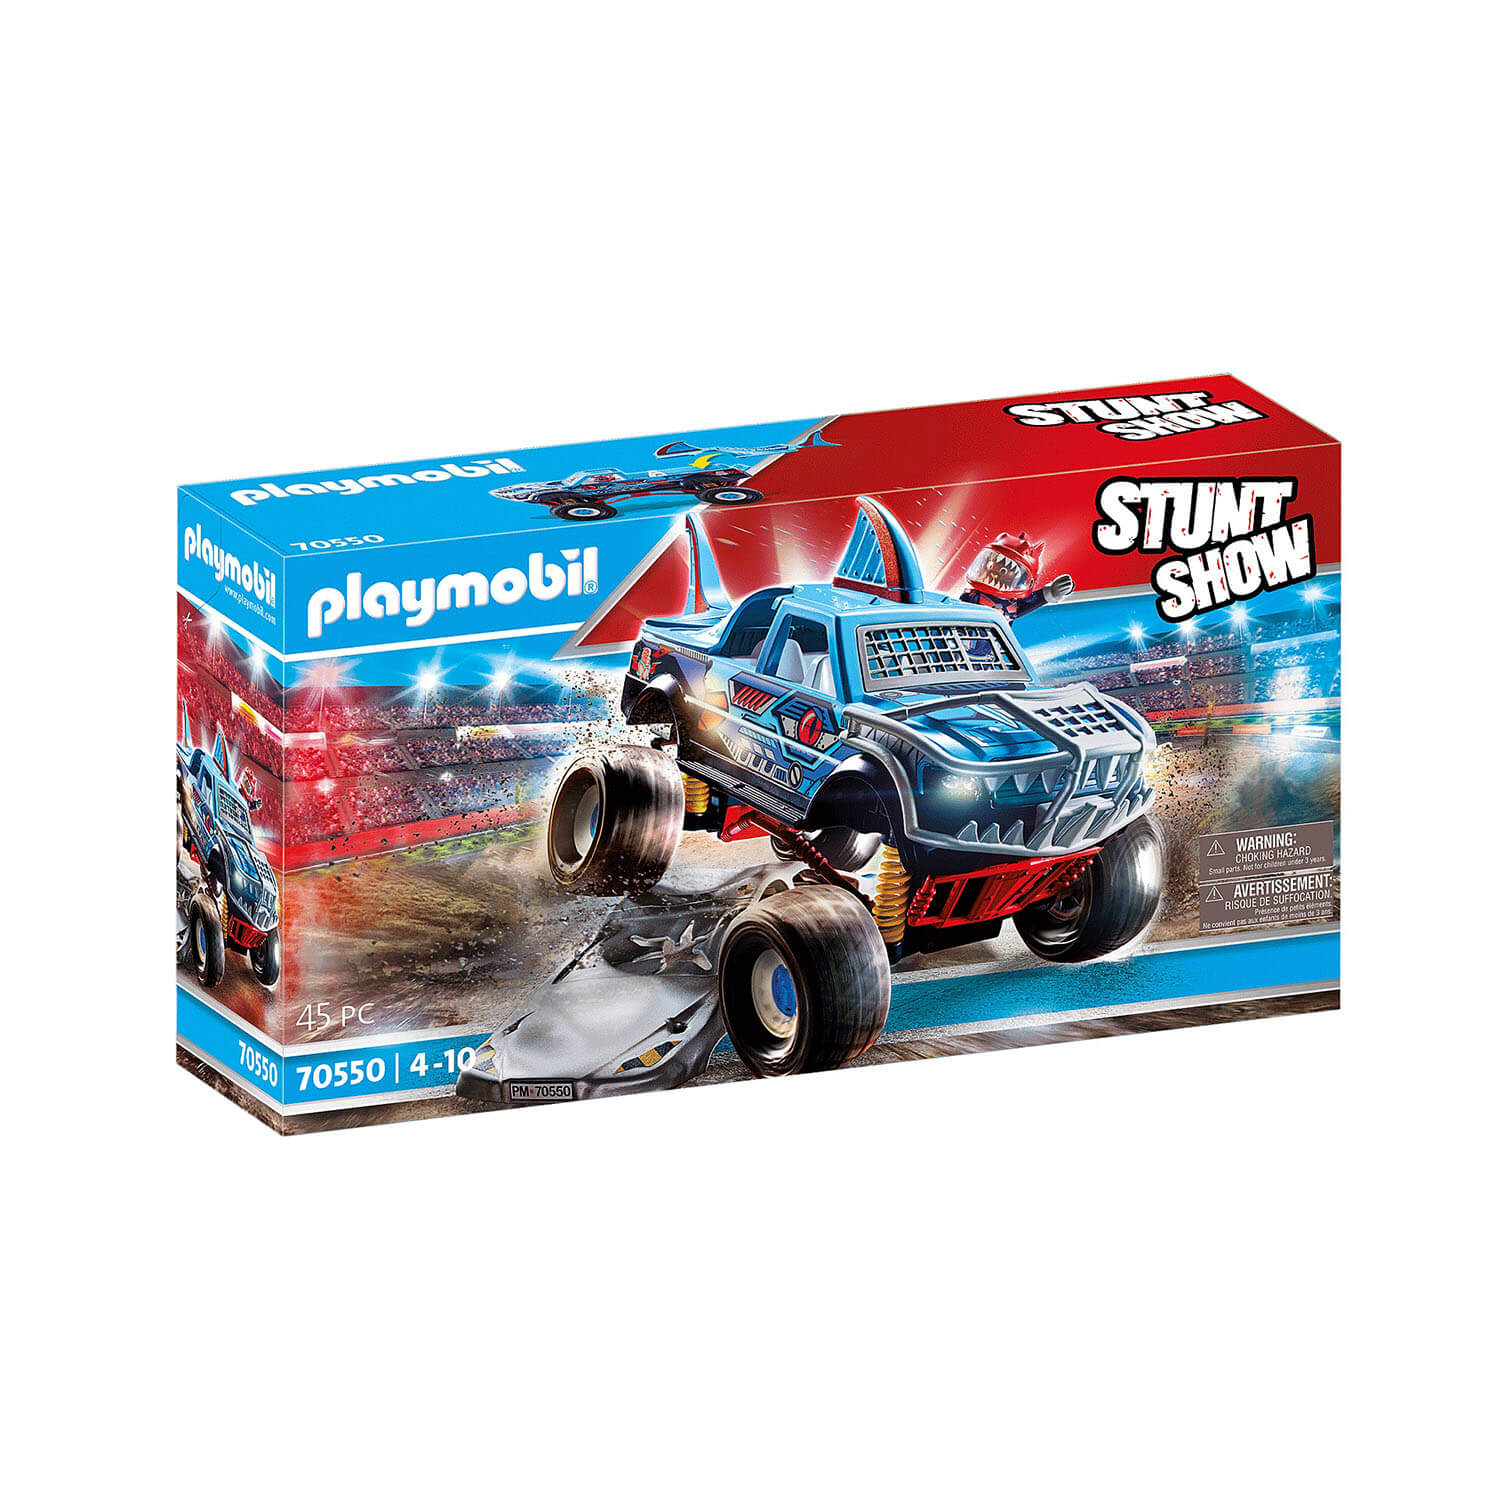 PLAYMOBIL Stunt Show Shark Monster Truck (70550)